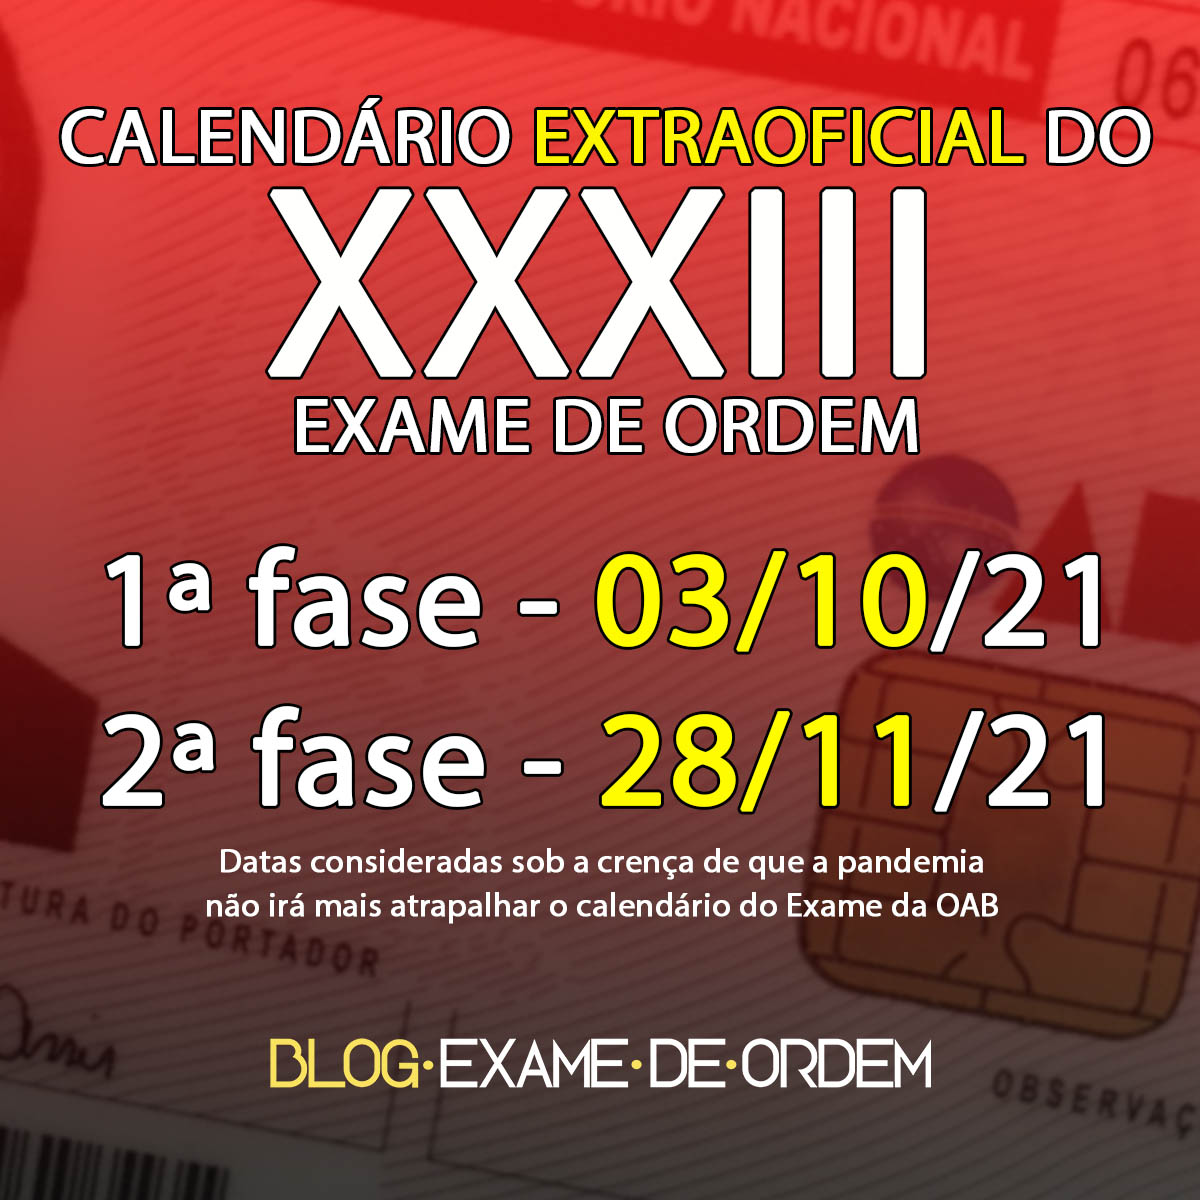 Calendário extraoficial do XXXIII Exame de Ordem